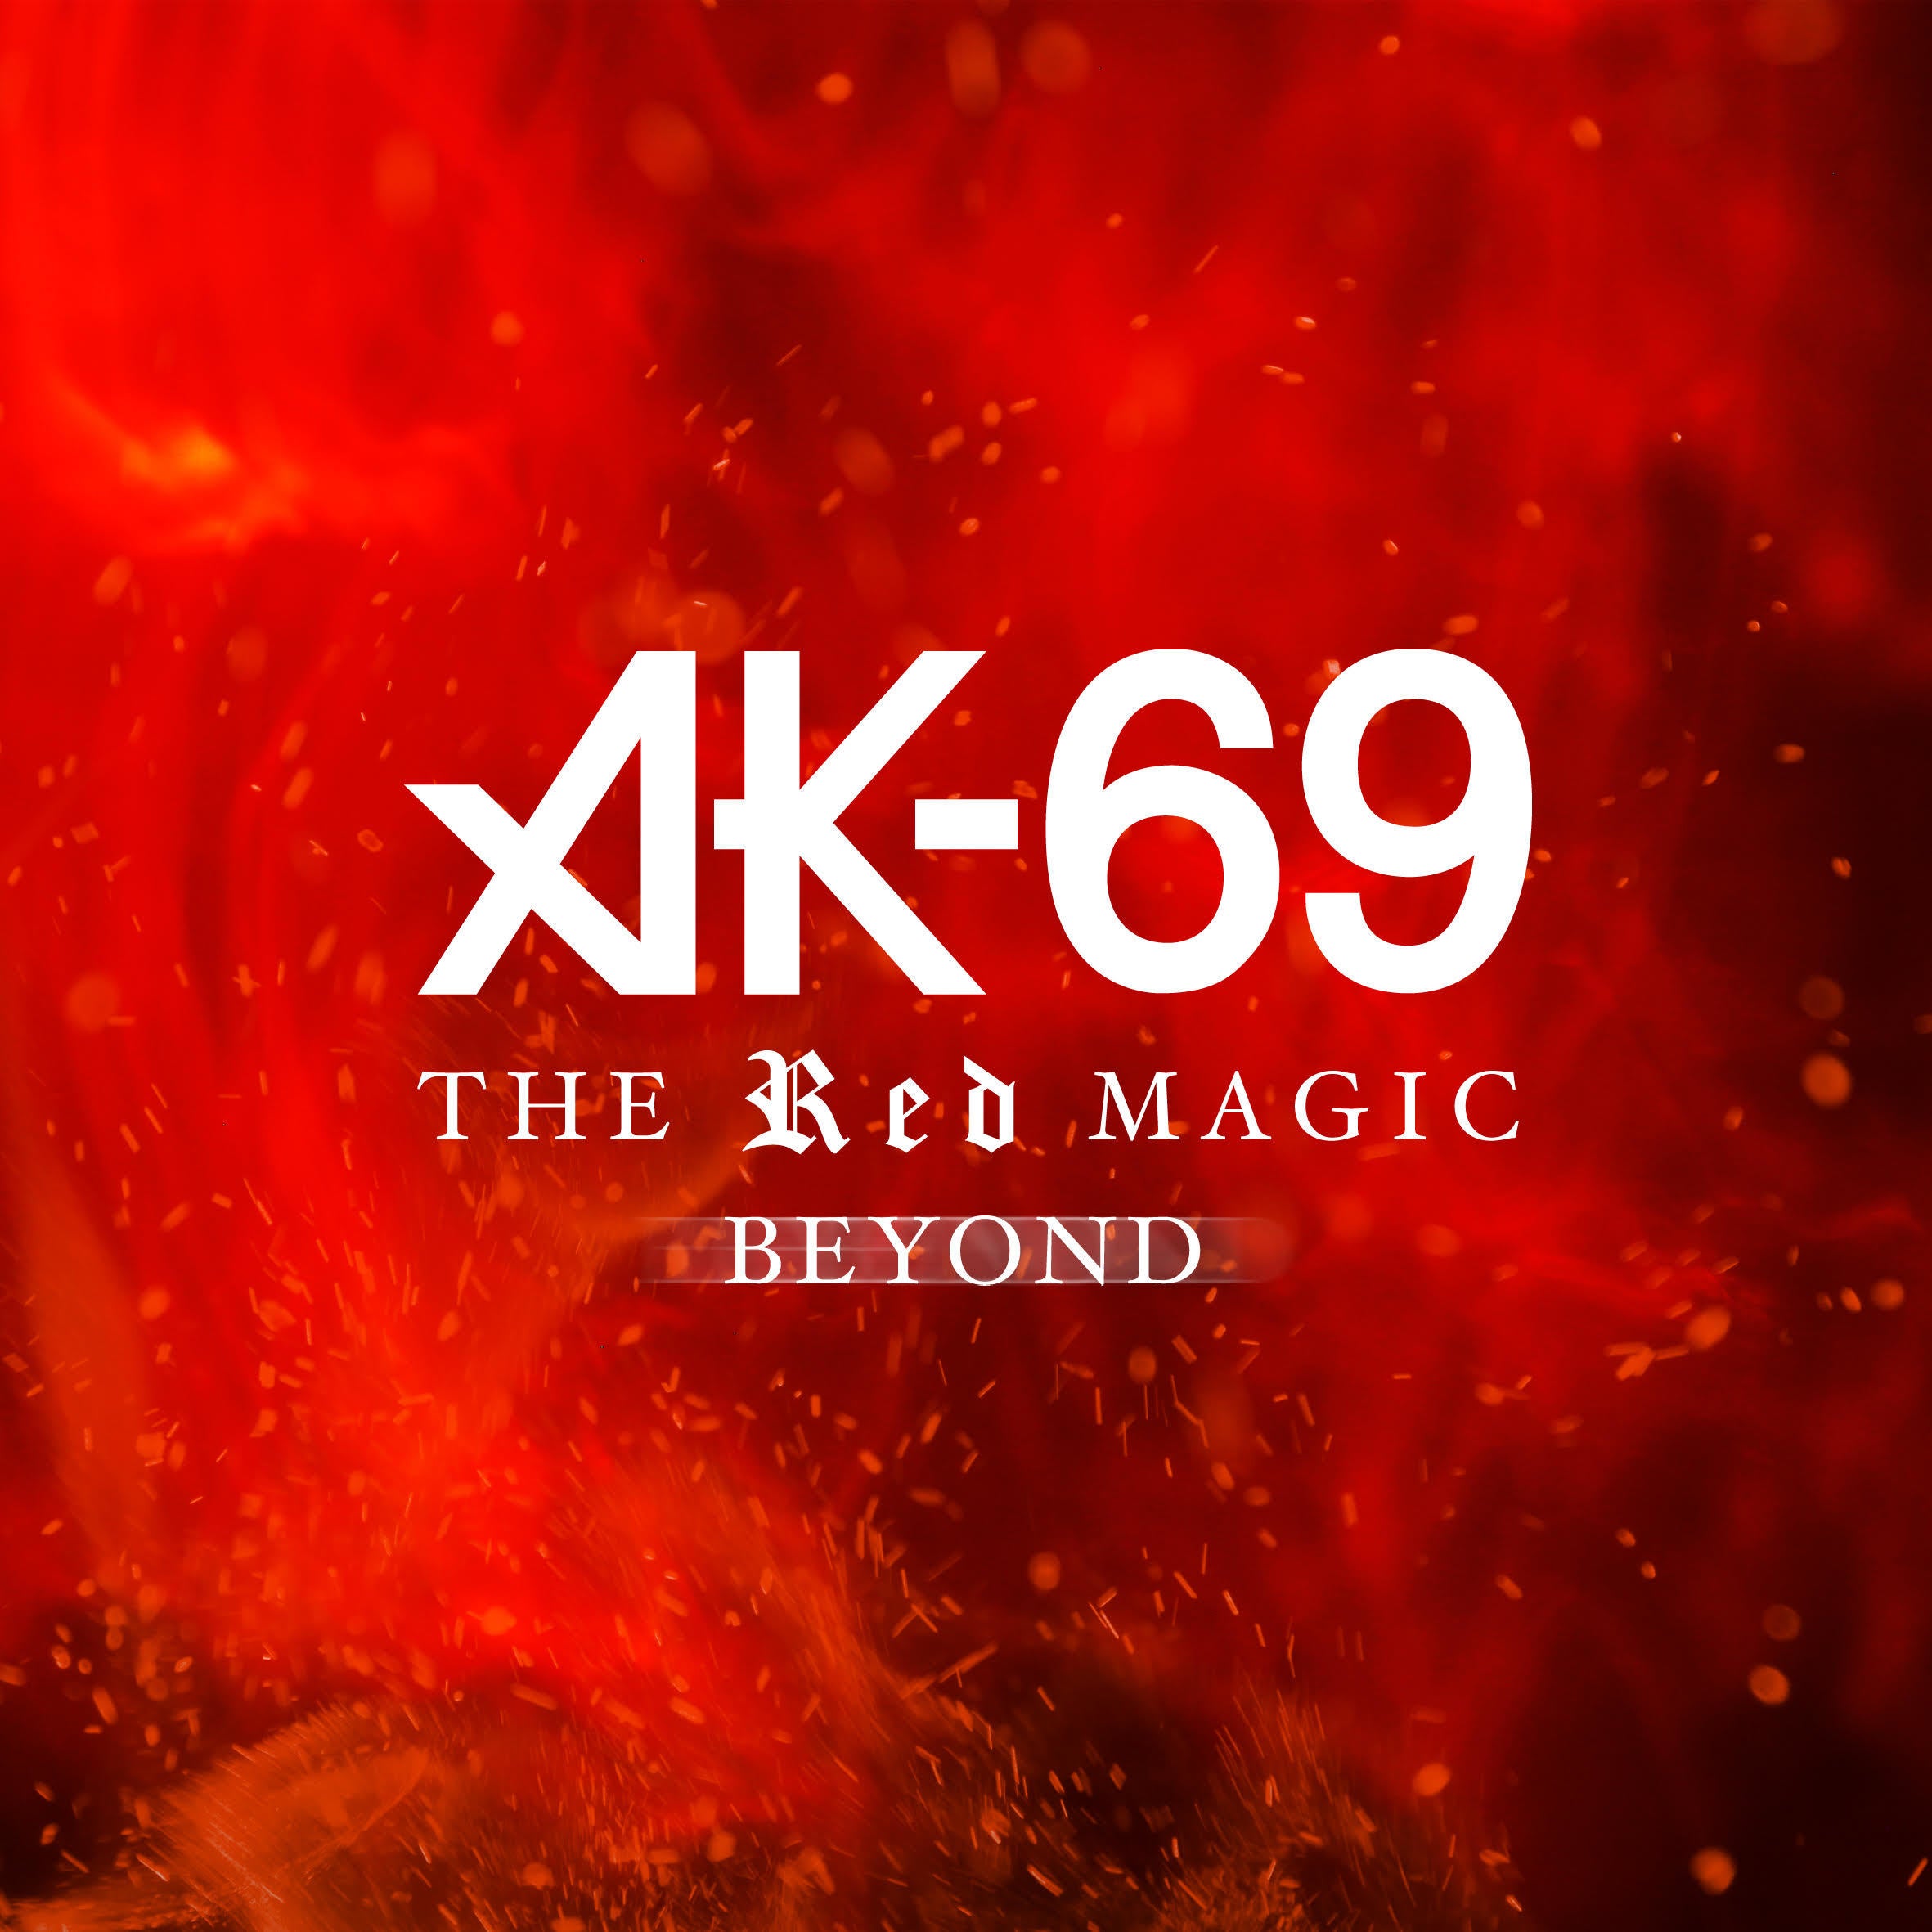 ドルフィンズ公式テーマソング Ak 69 The Red Magic Beyond 先行配信とホームゲーム来場のお知らせ 名古屋ダイヤモンドドルフィンズ